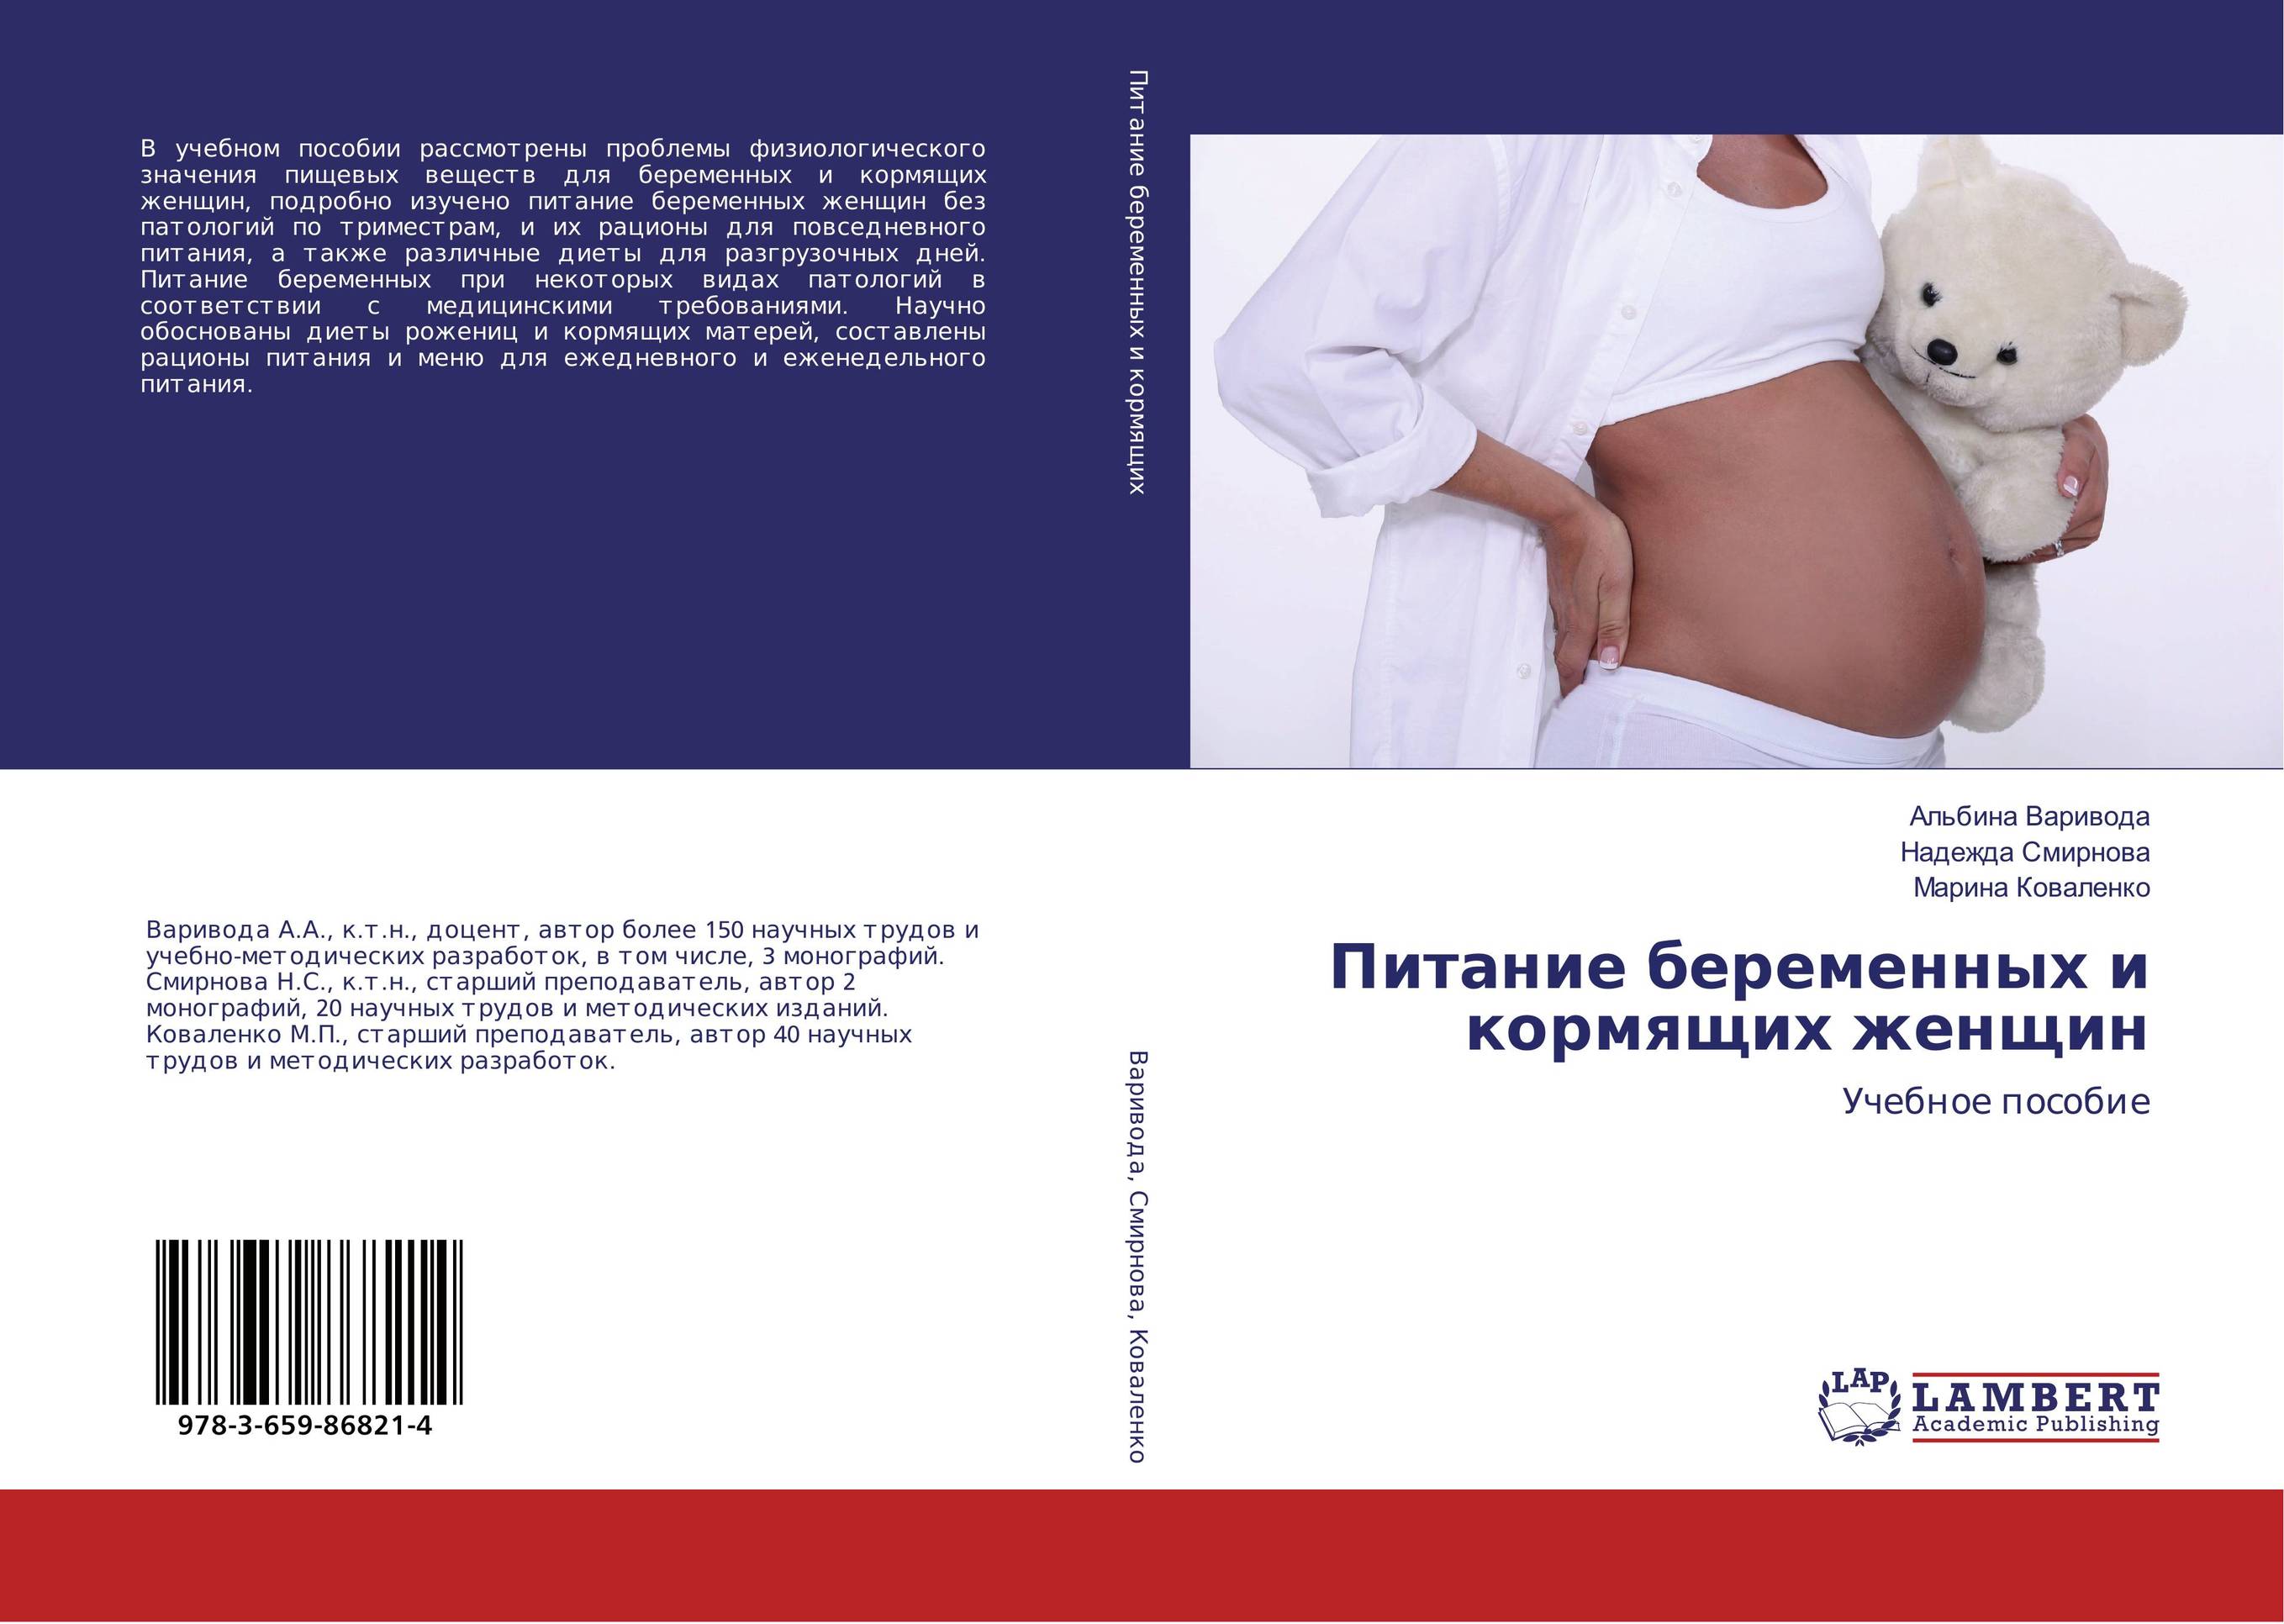 Питание беременных и кормящих женщин. Учебное пособие.